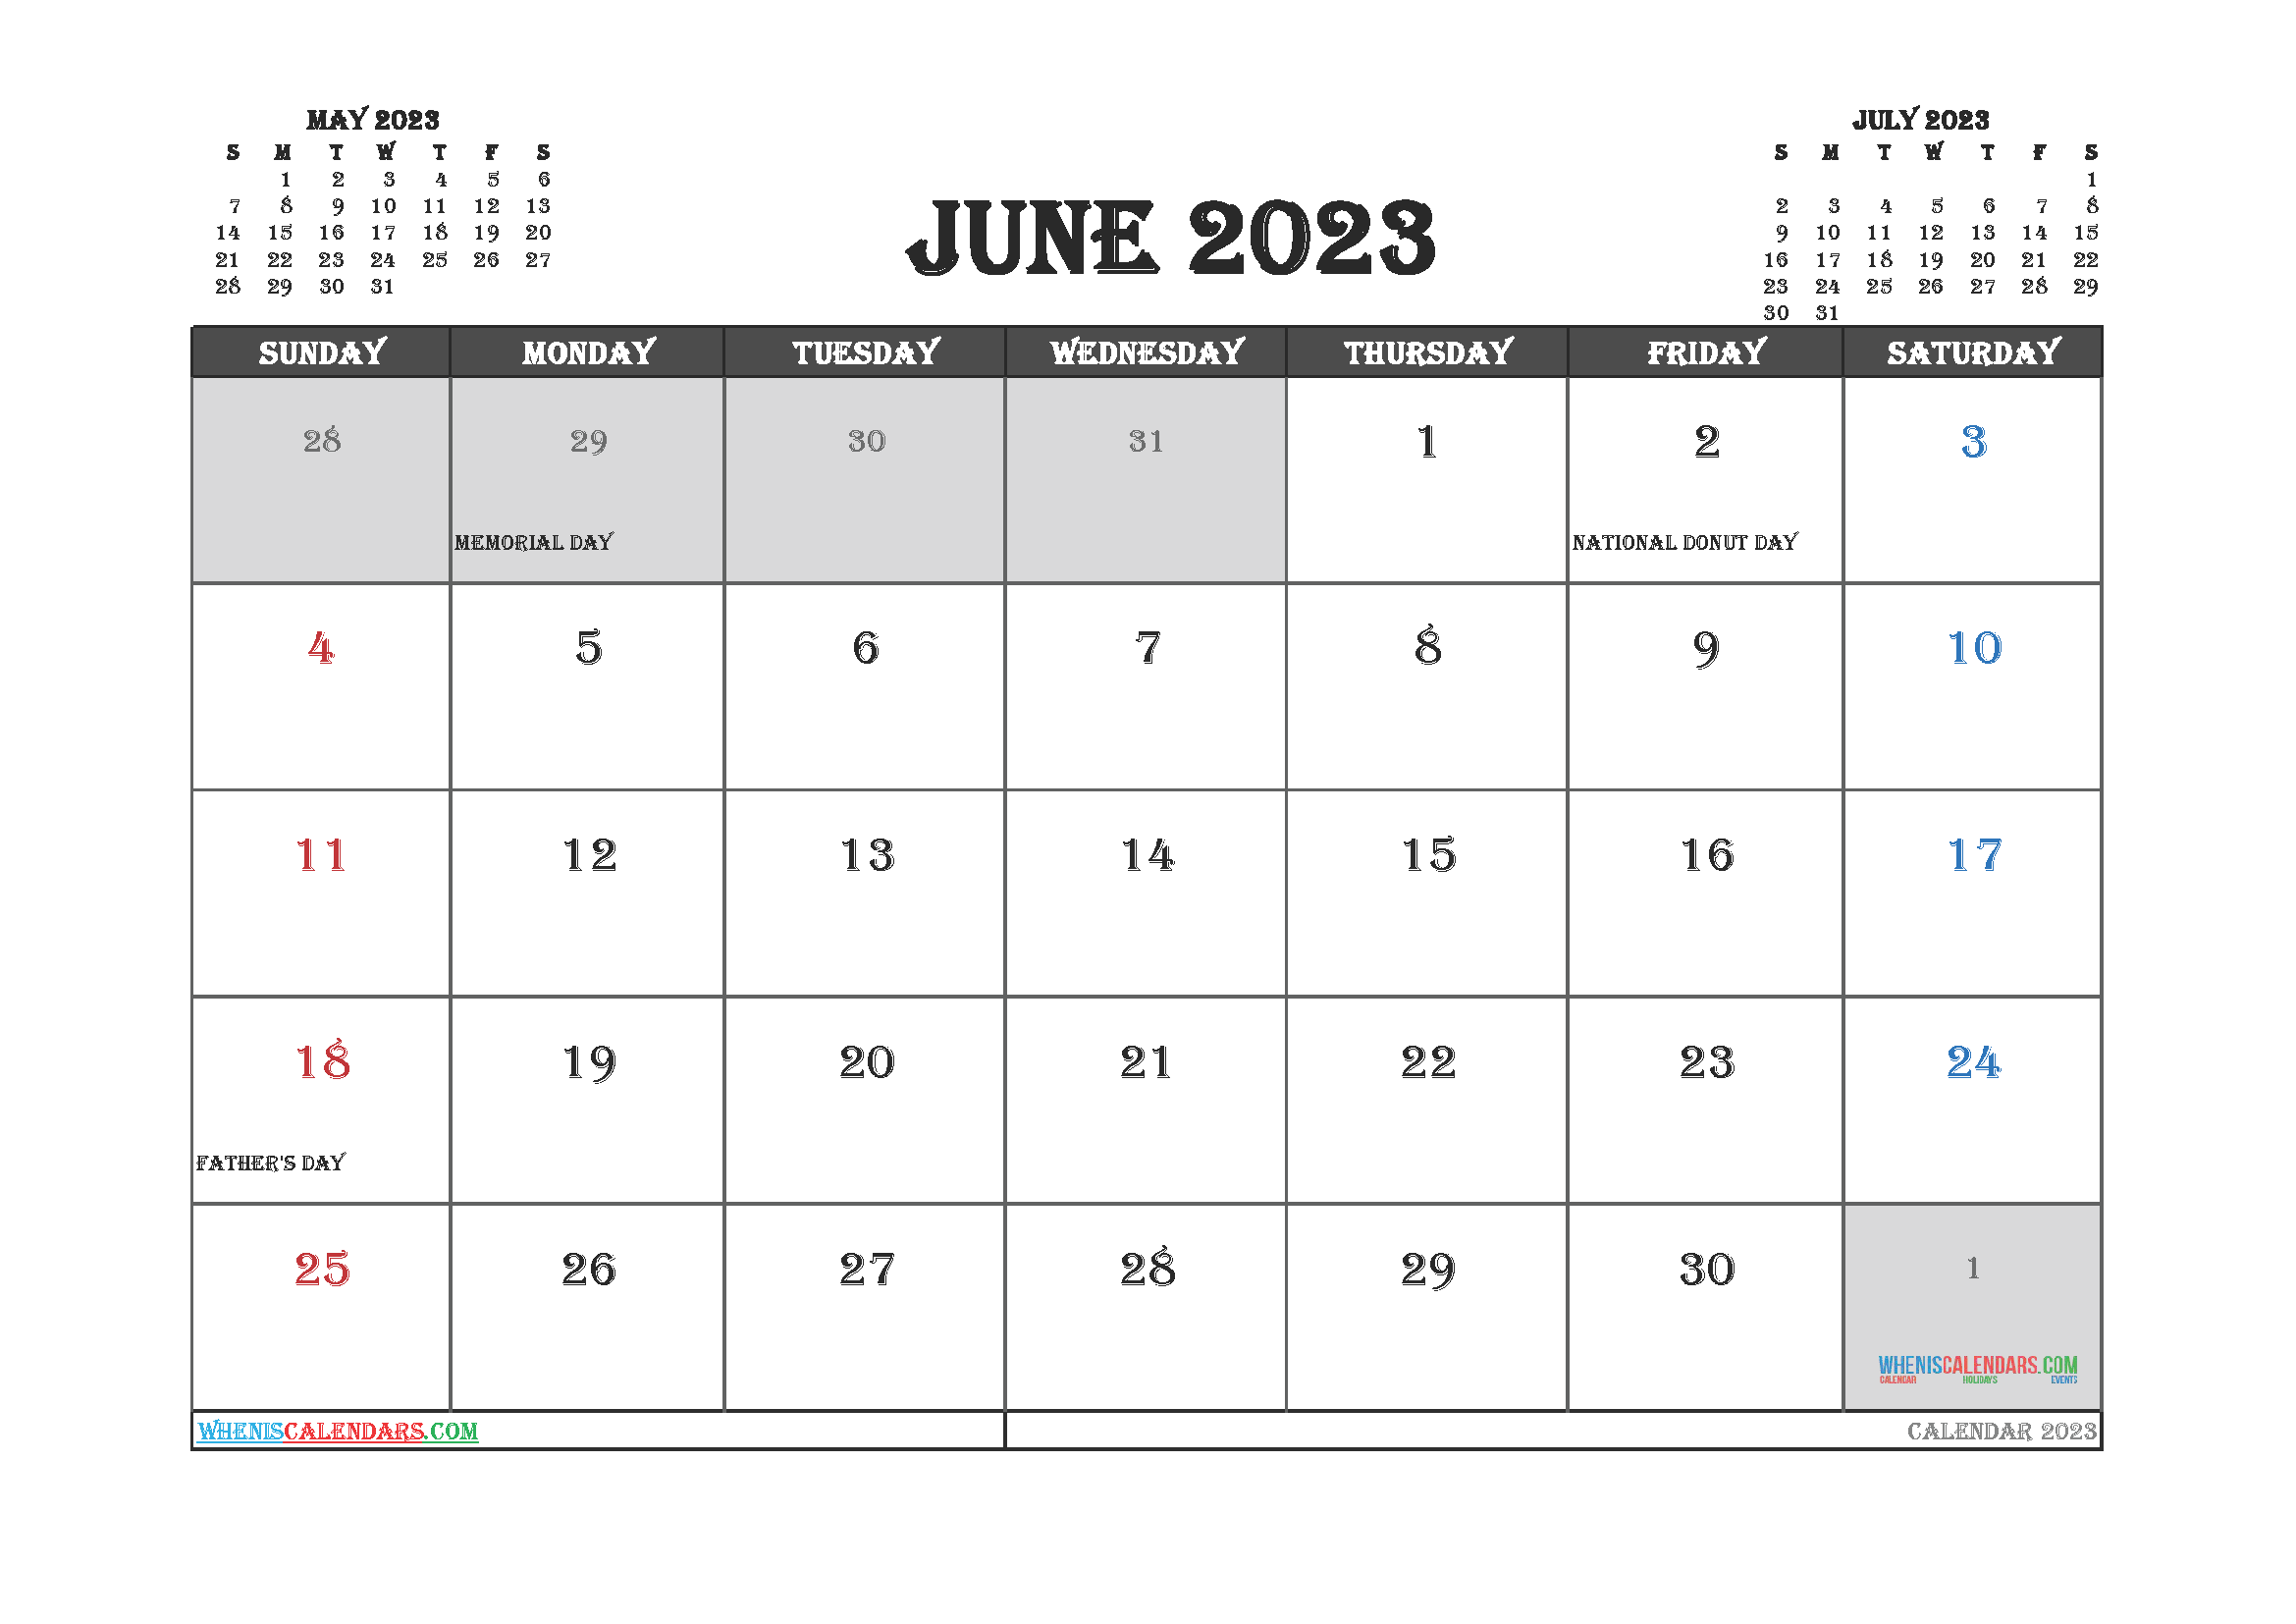 starfall calendar september 2020